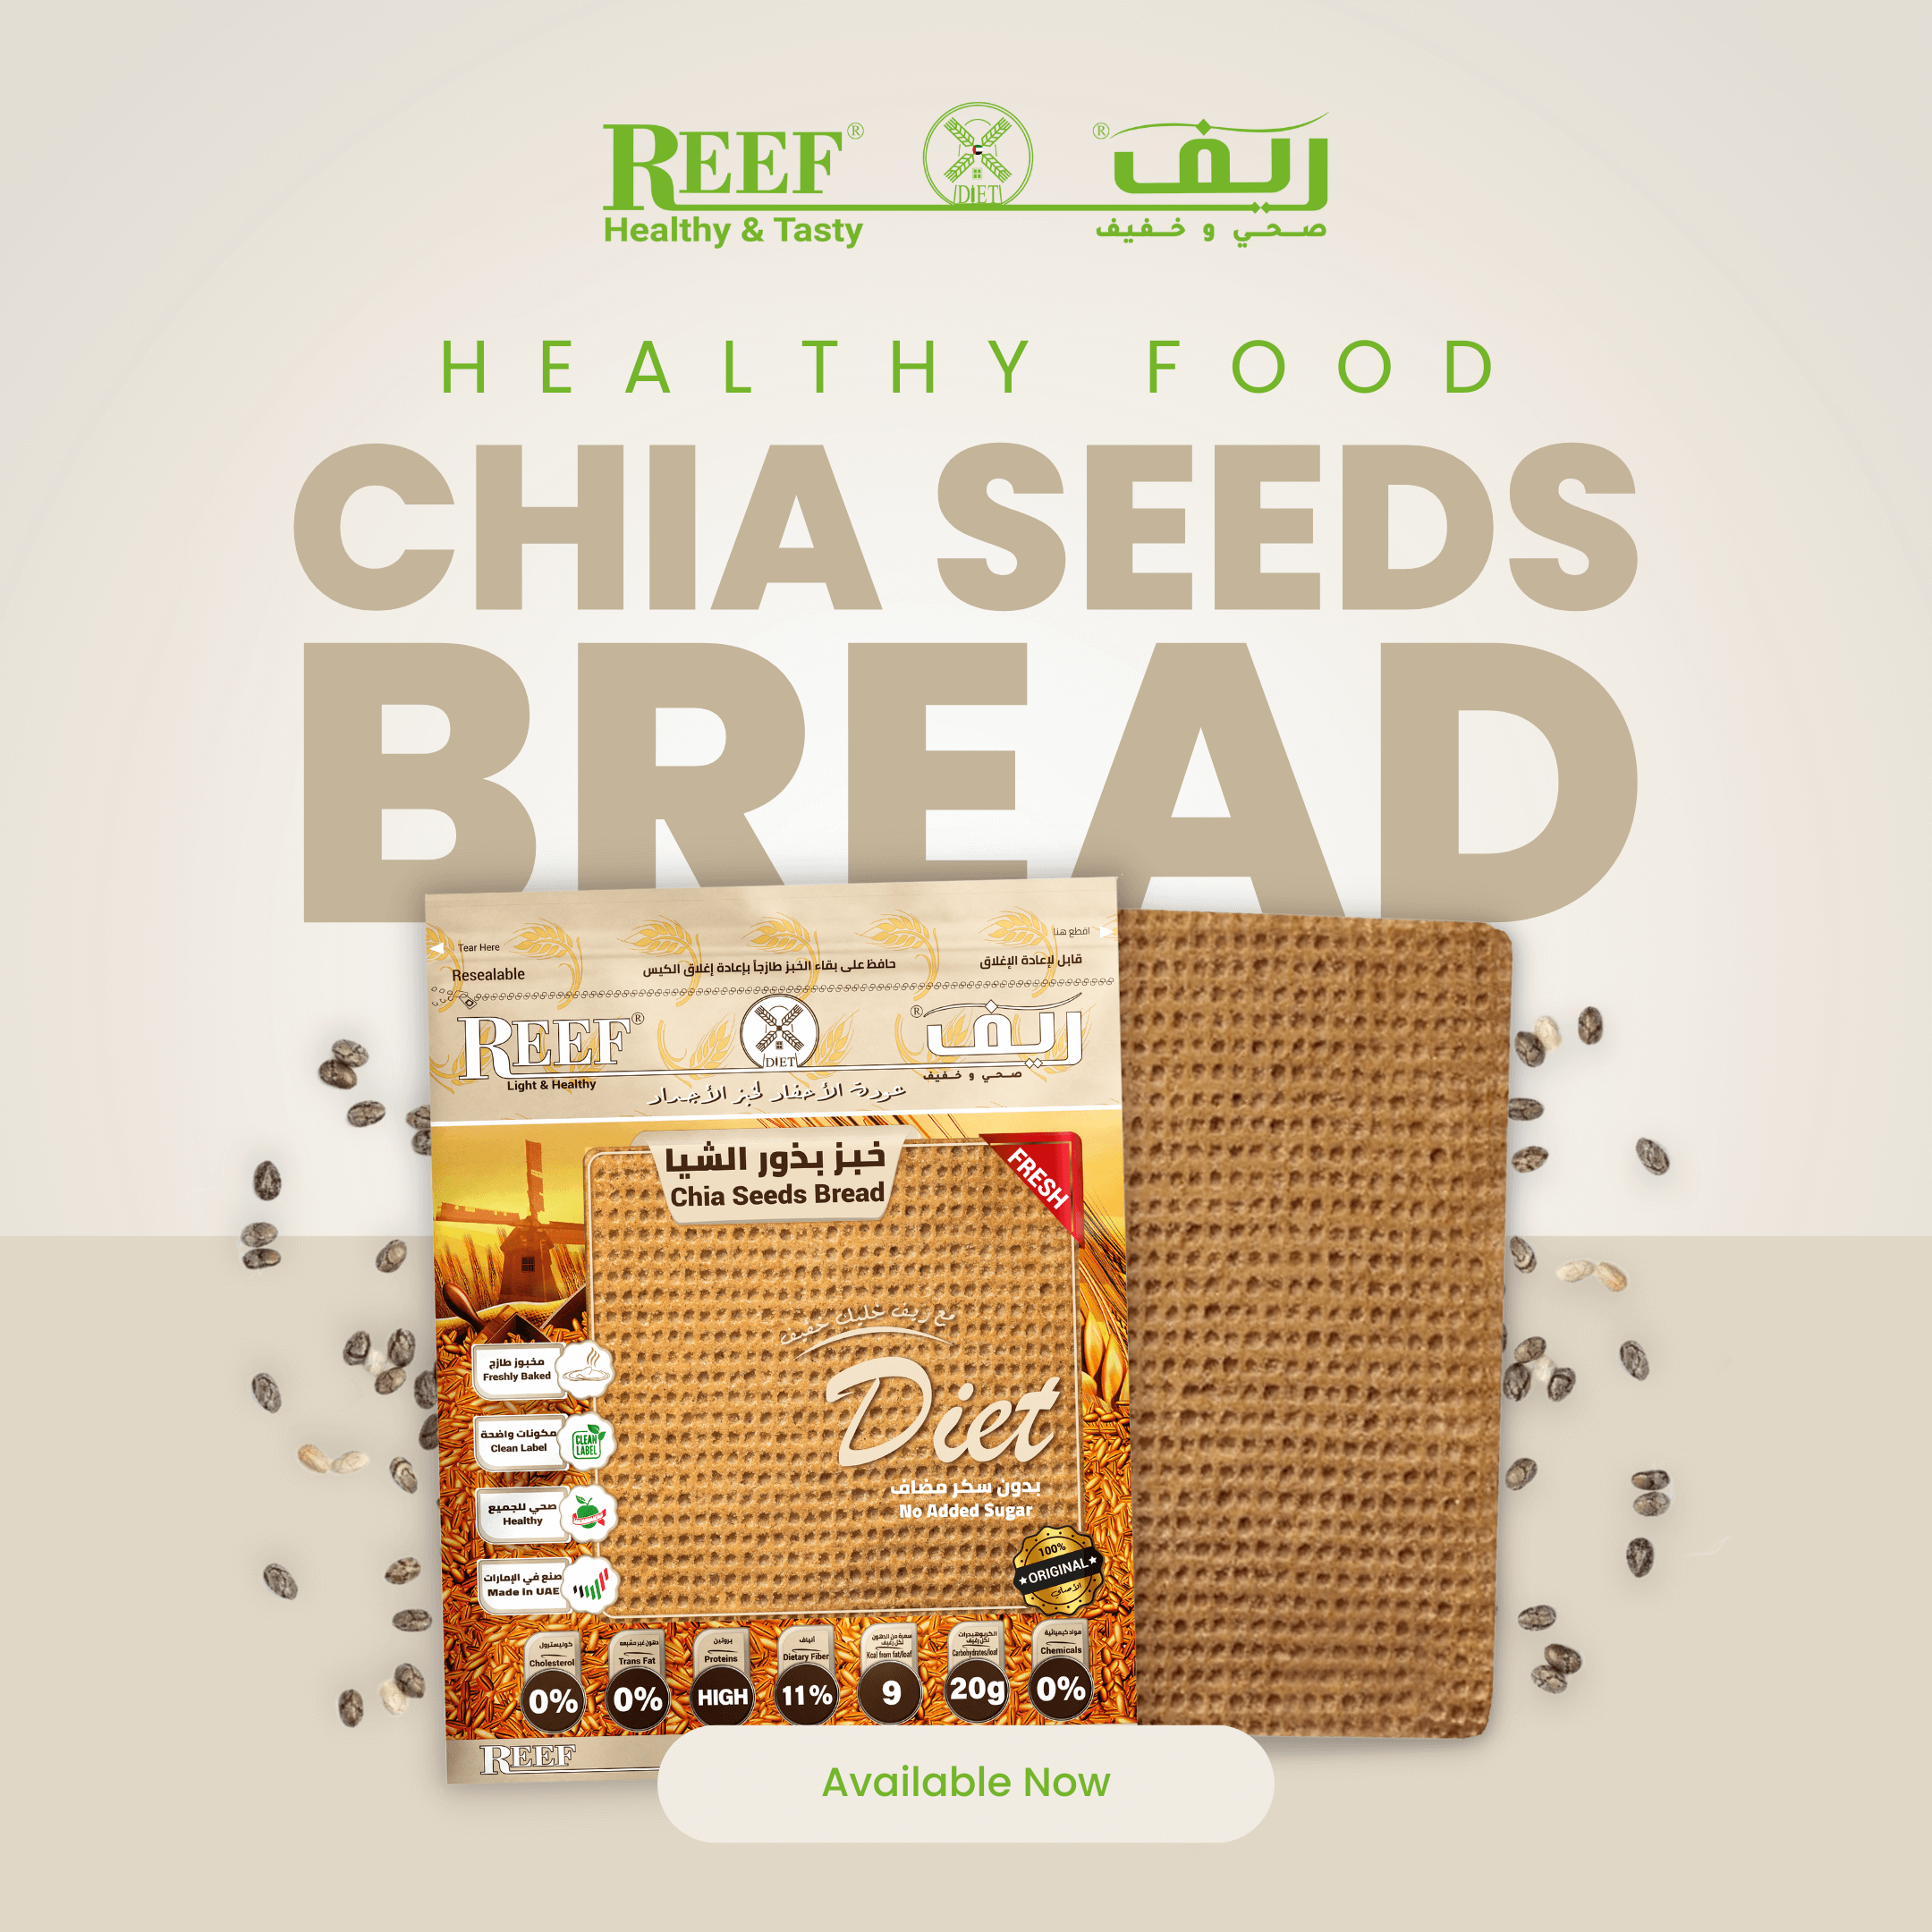 Reef Healthy Bread UAE